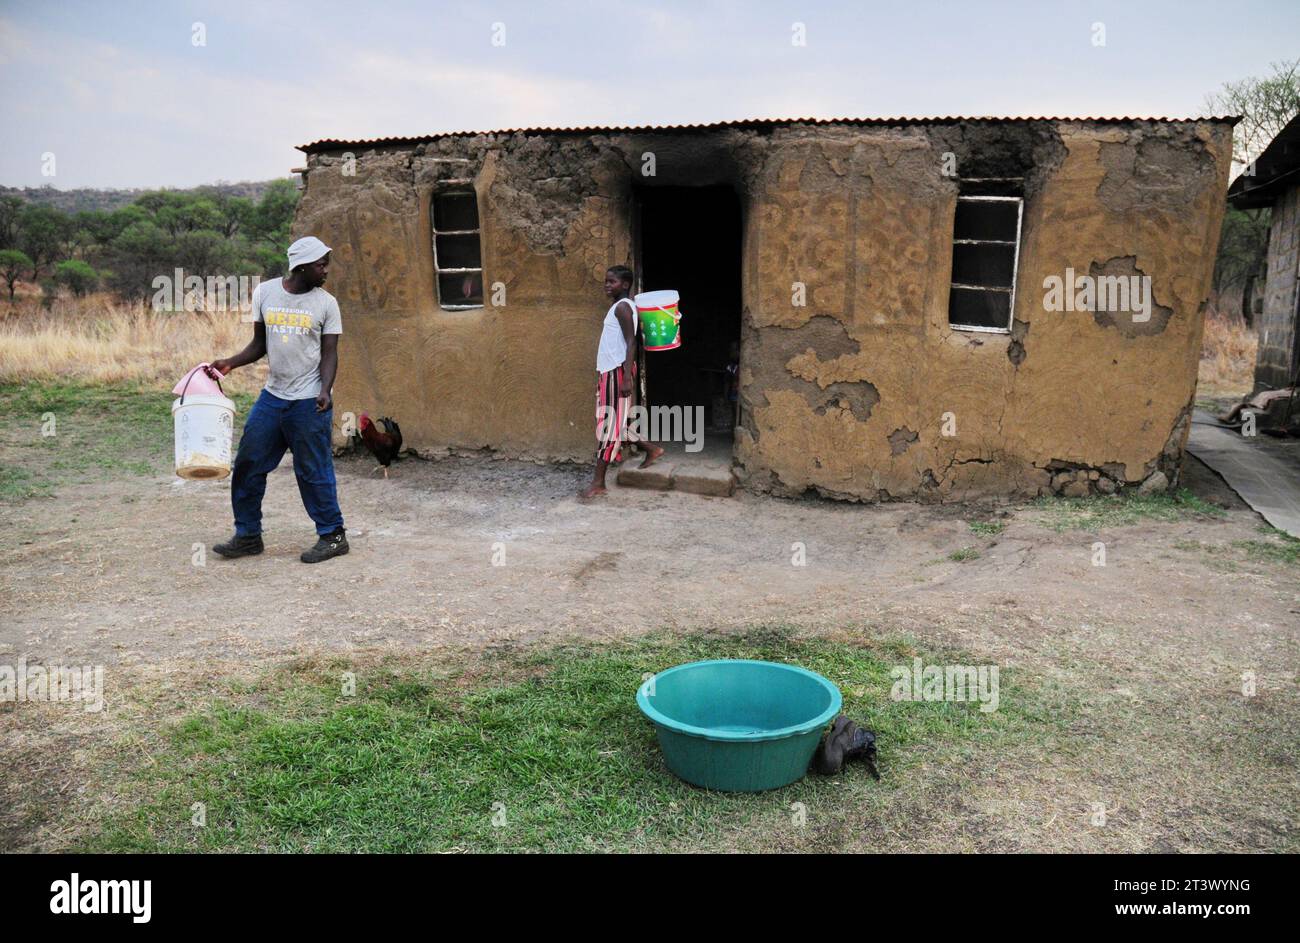 Les personnes qui vivent dans des fermes dans les zones rurales d’Afrique du Sud sont confrontées au défi permanent de ne pas avoir accès aux services de base tels que l’eau et l’assainissement Banque D'Images